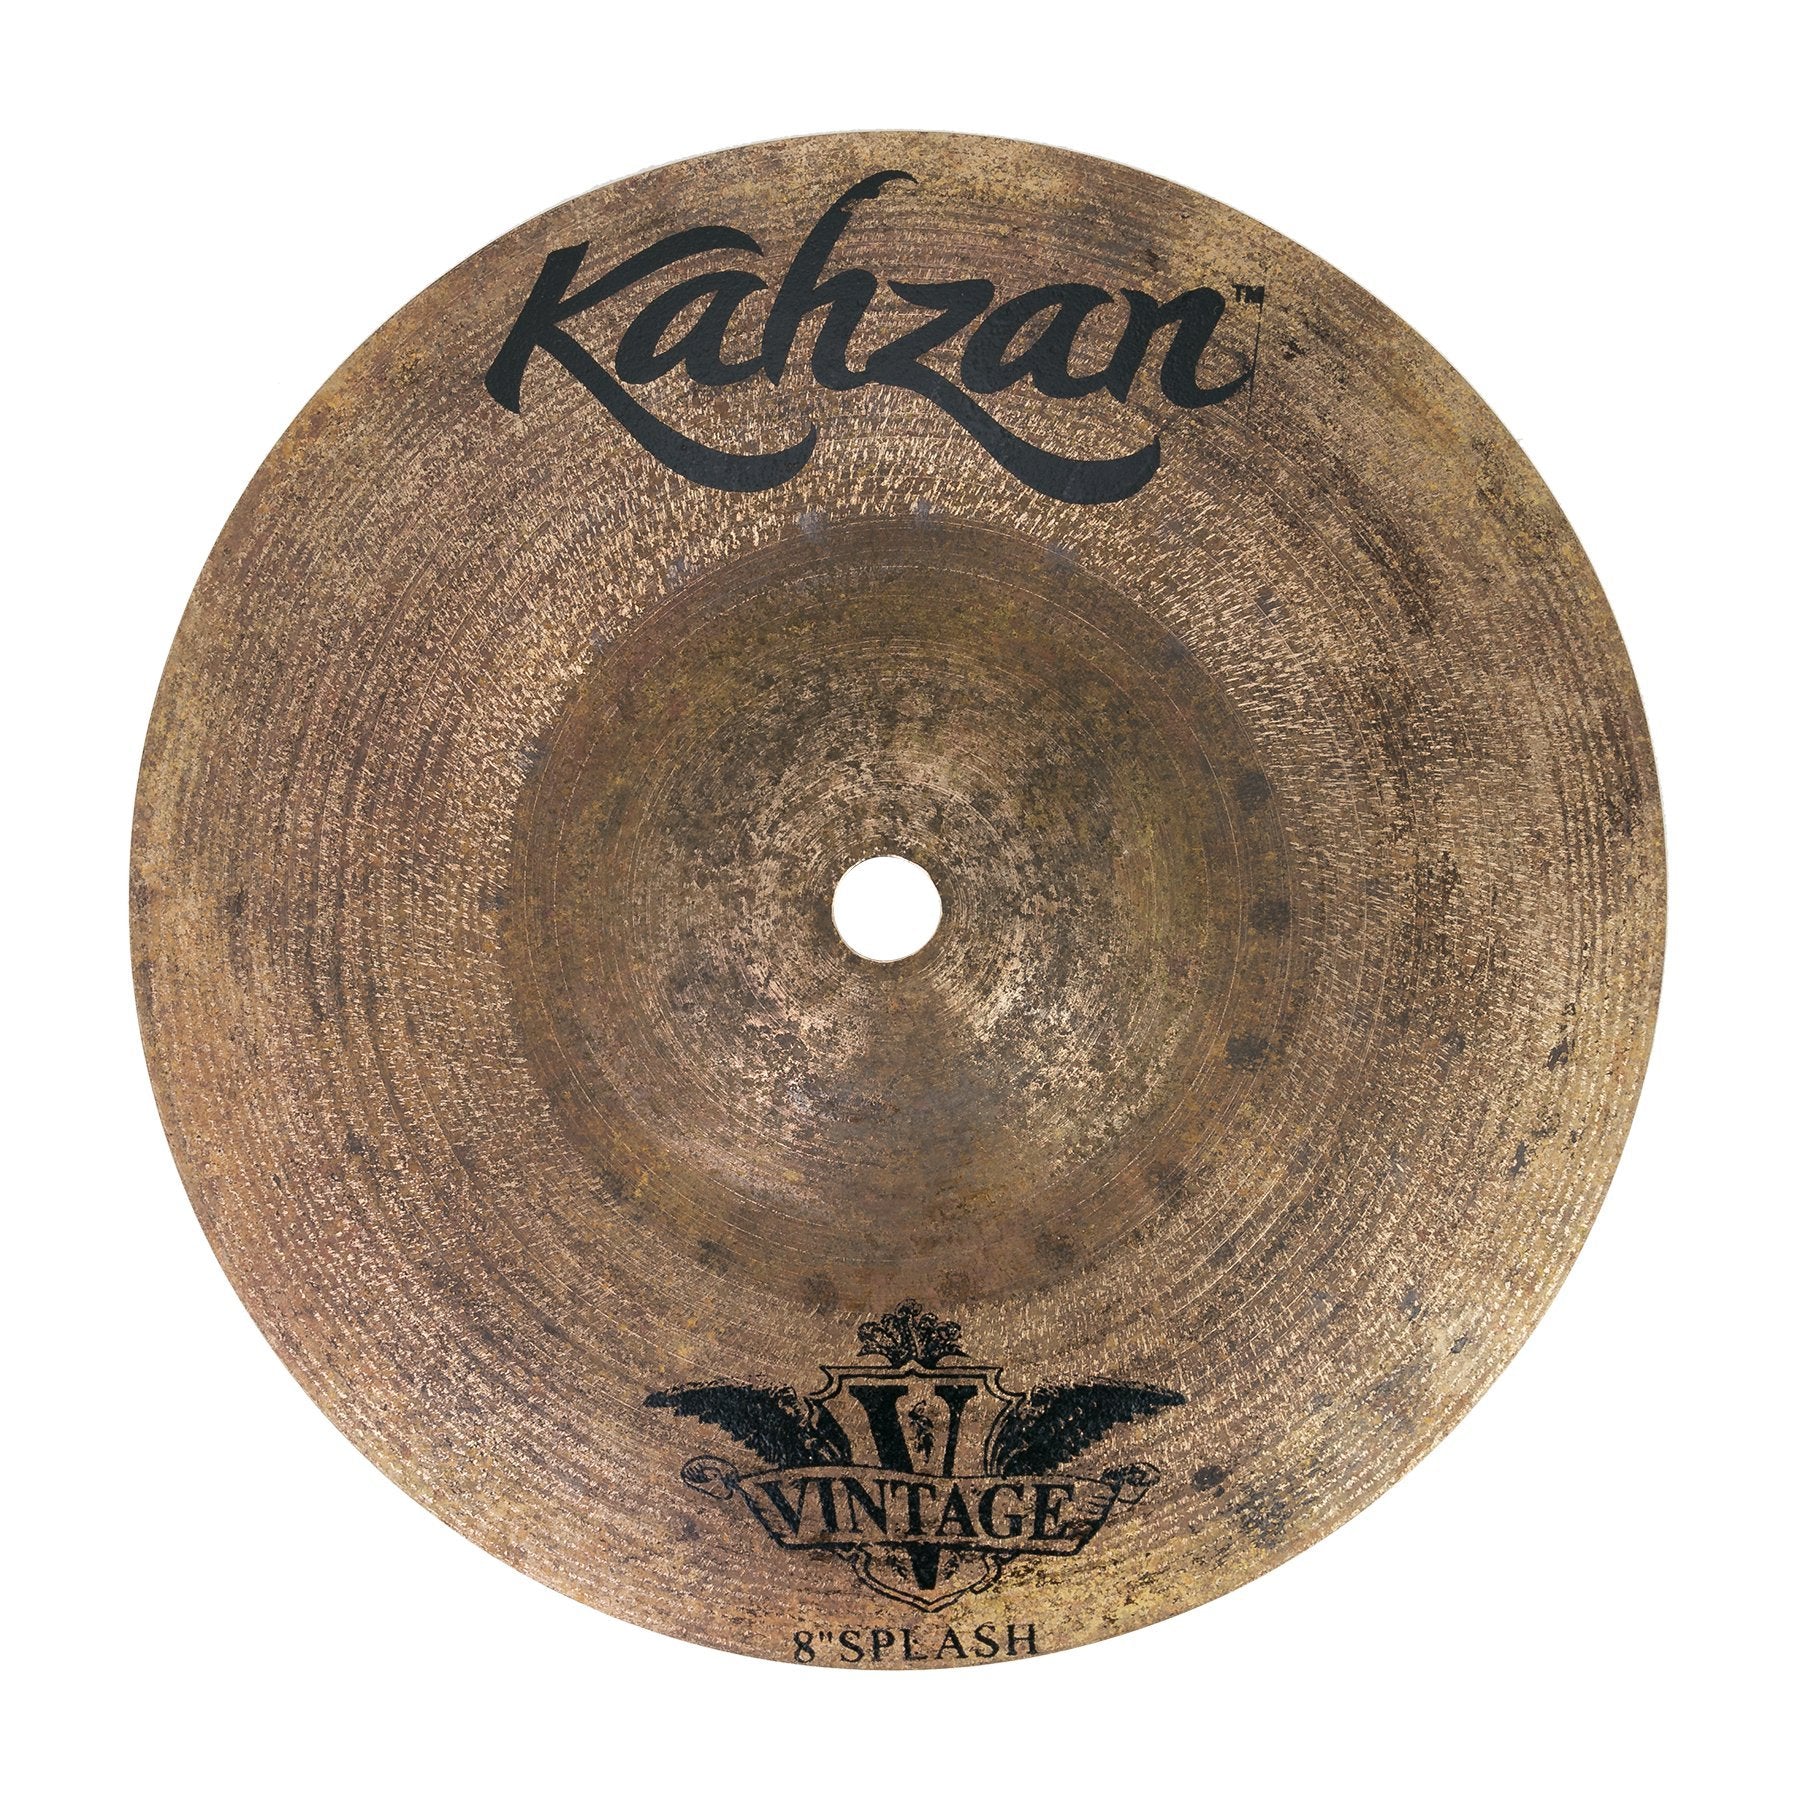 Kahzan 'Vintage Series' Splash Cymbal (8")-KC-VIN-08S